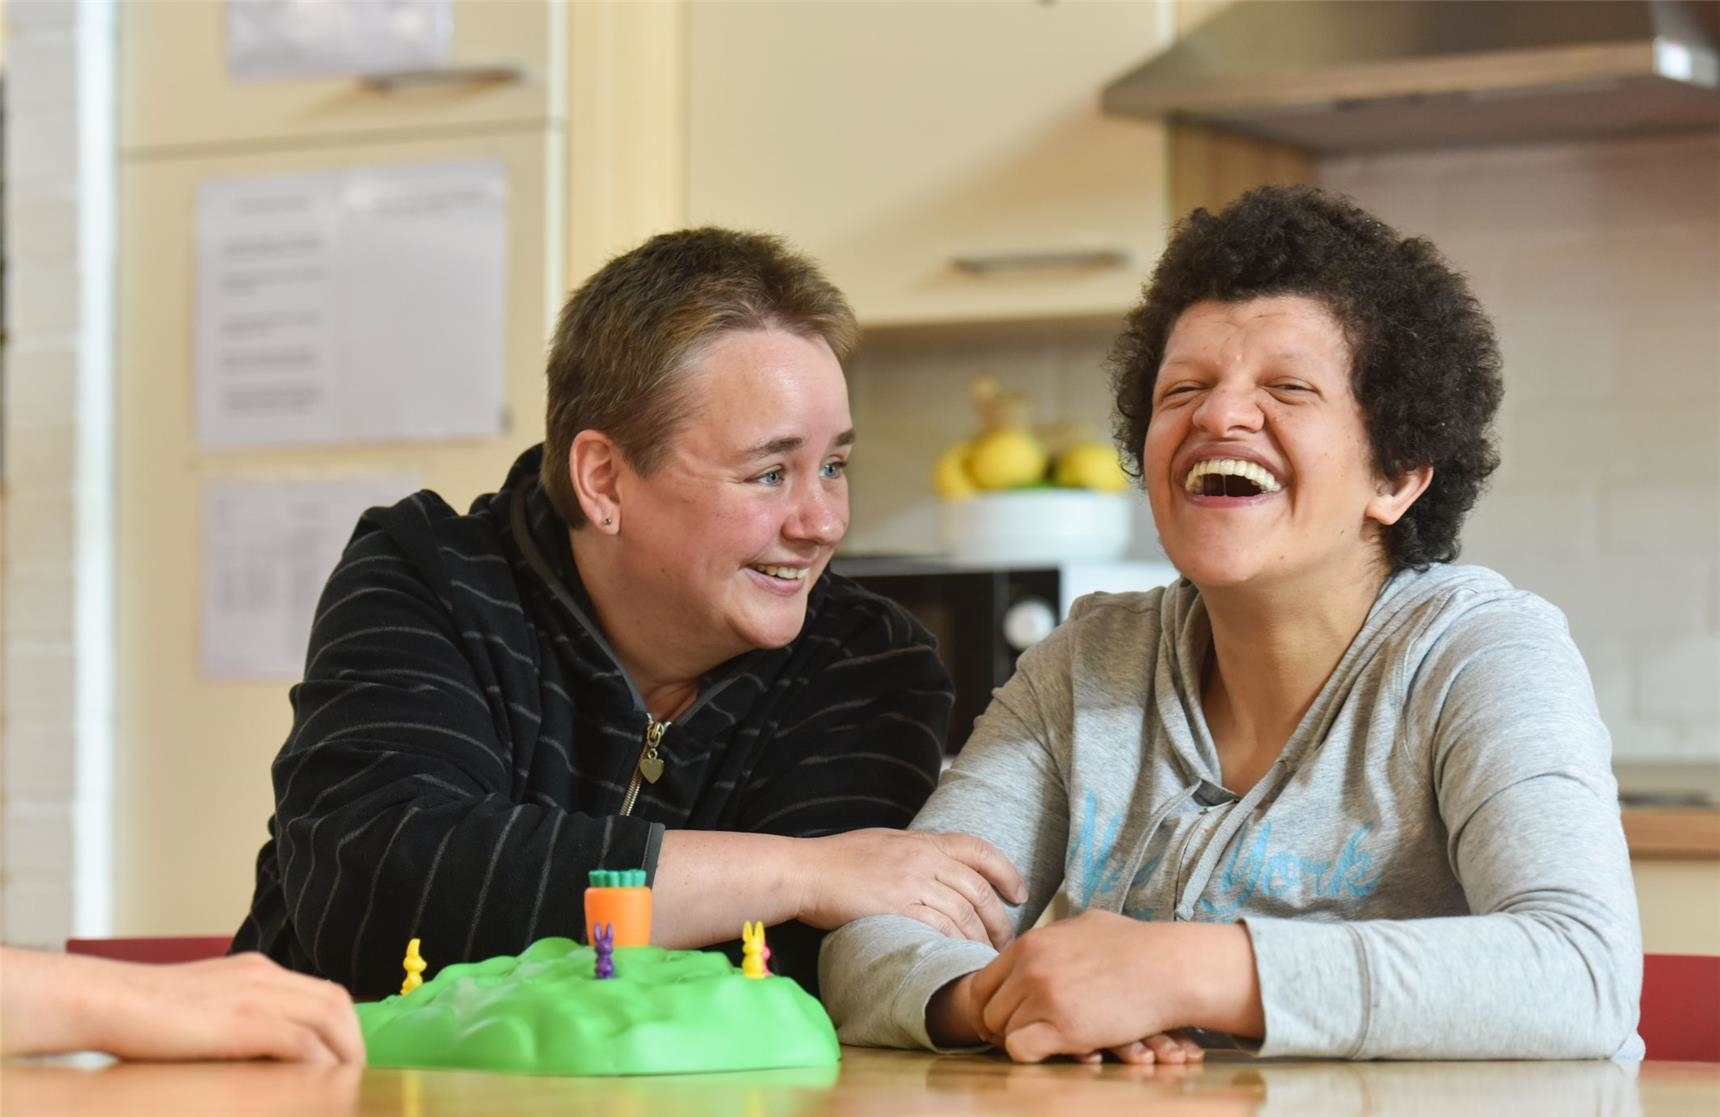 Frau mit Behinderung und Betreuerin lachen und spielen miteinander (KNA / Oppitz)